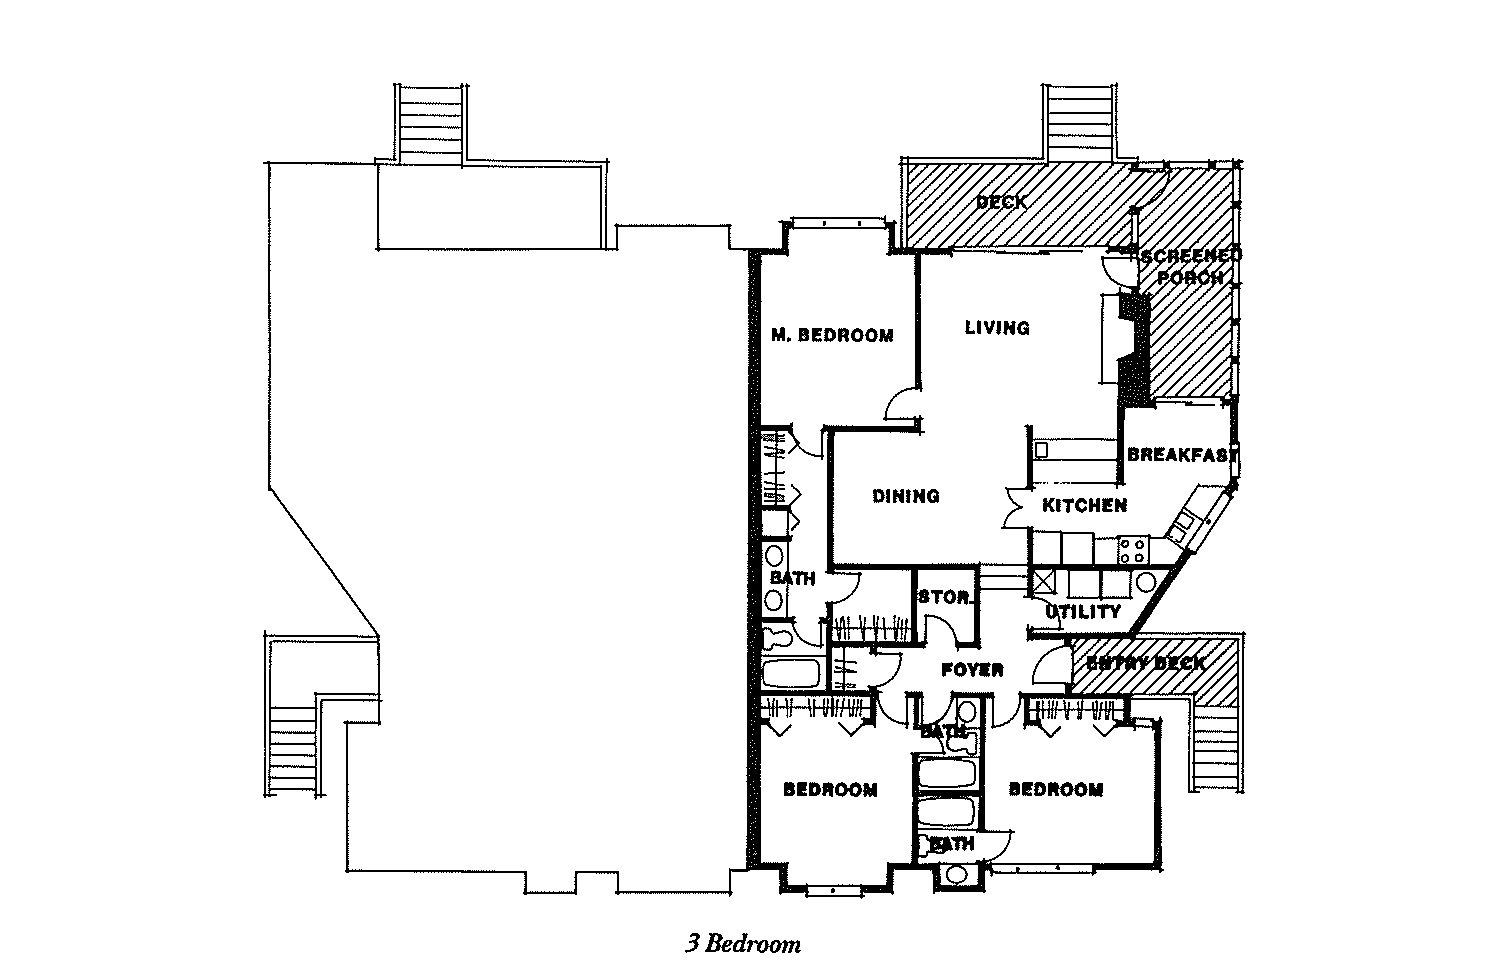 3 BR floor plan